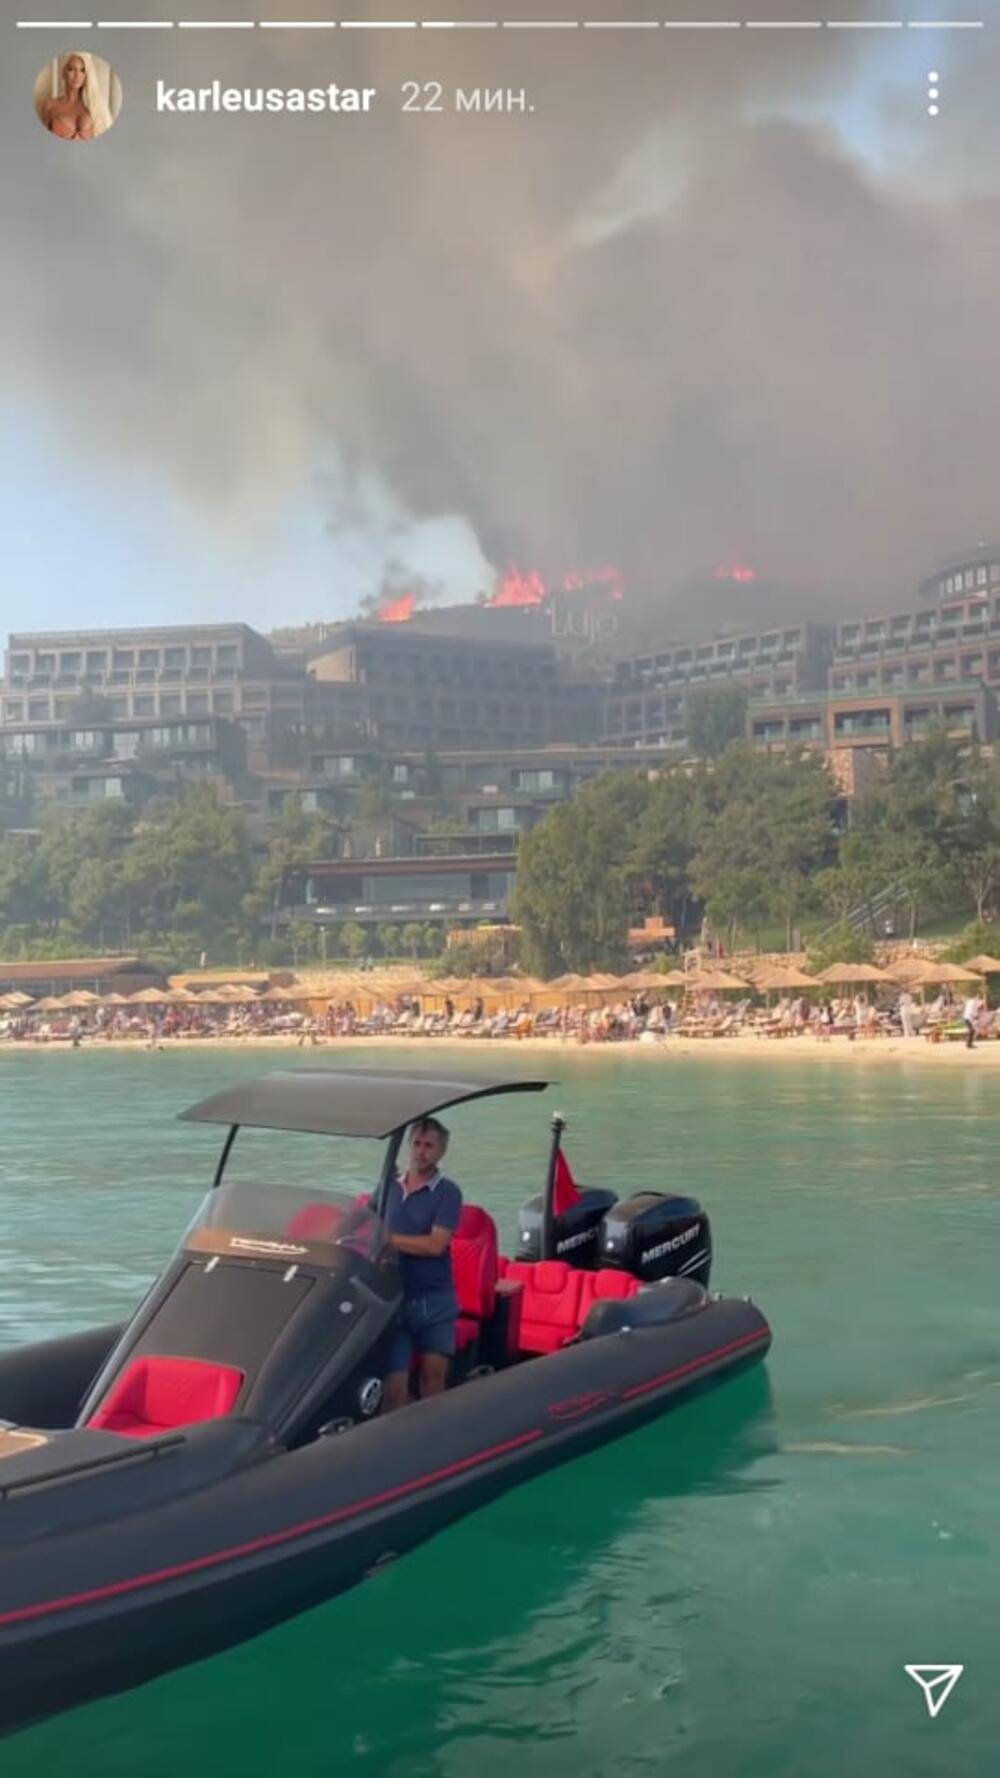 Karleušu s djecom evakuirali iz hotela zbog požara: Ovo je kaos